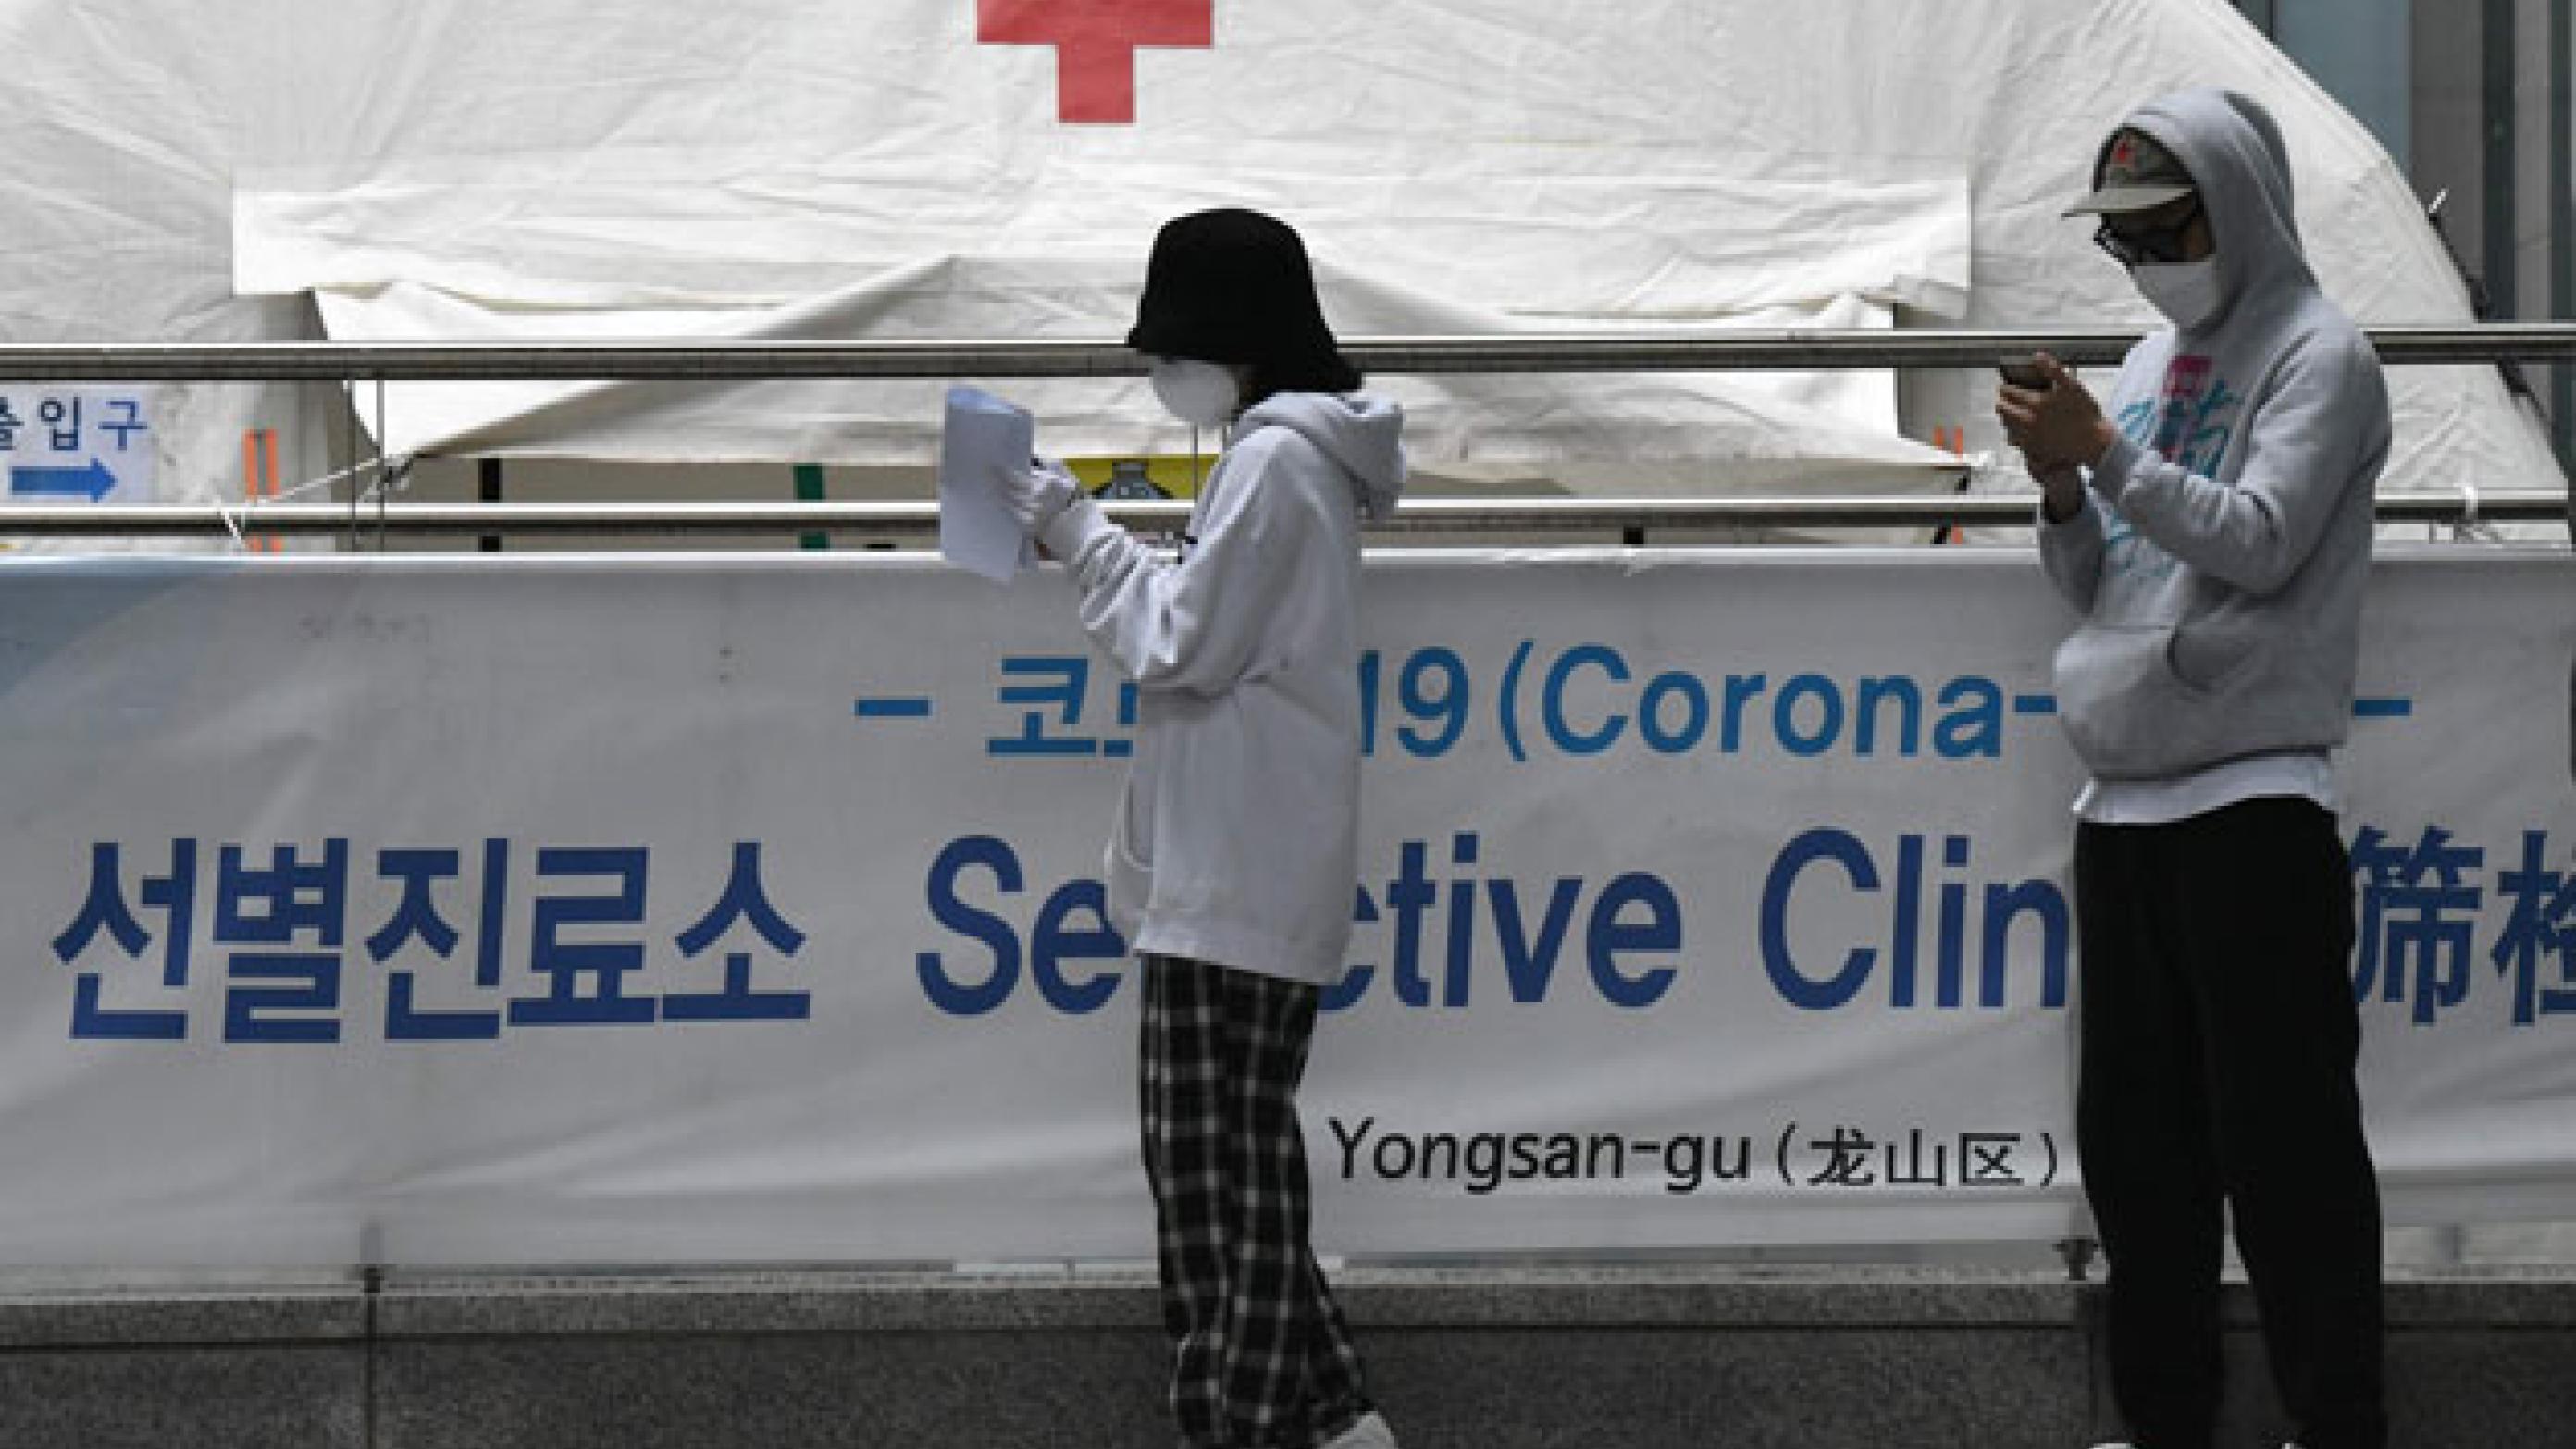 Kø til corona-testteltet i Seouls natklub-kvarter Itaewon, som var ramt af et cluster-outbreak. De sydkoreanske myndigheder blev kritiseret for at tracke borgernes bevægelser i nattelivet med mobildata. Mange frygtede yderligere stigmatisering af homoseksuelle Foto: Jung Yeon-Je/AFP/Ritzau Scanpix